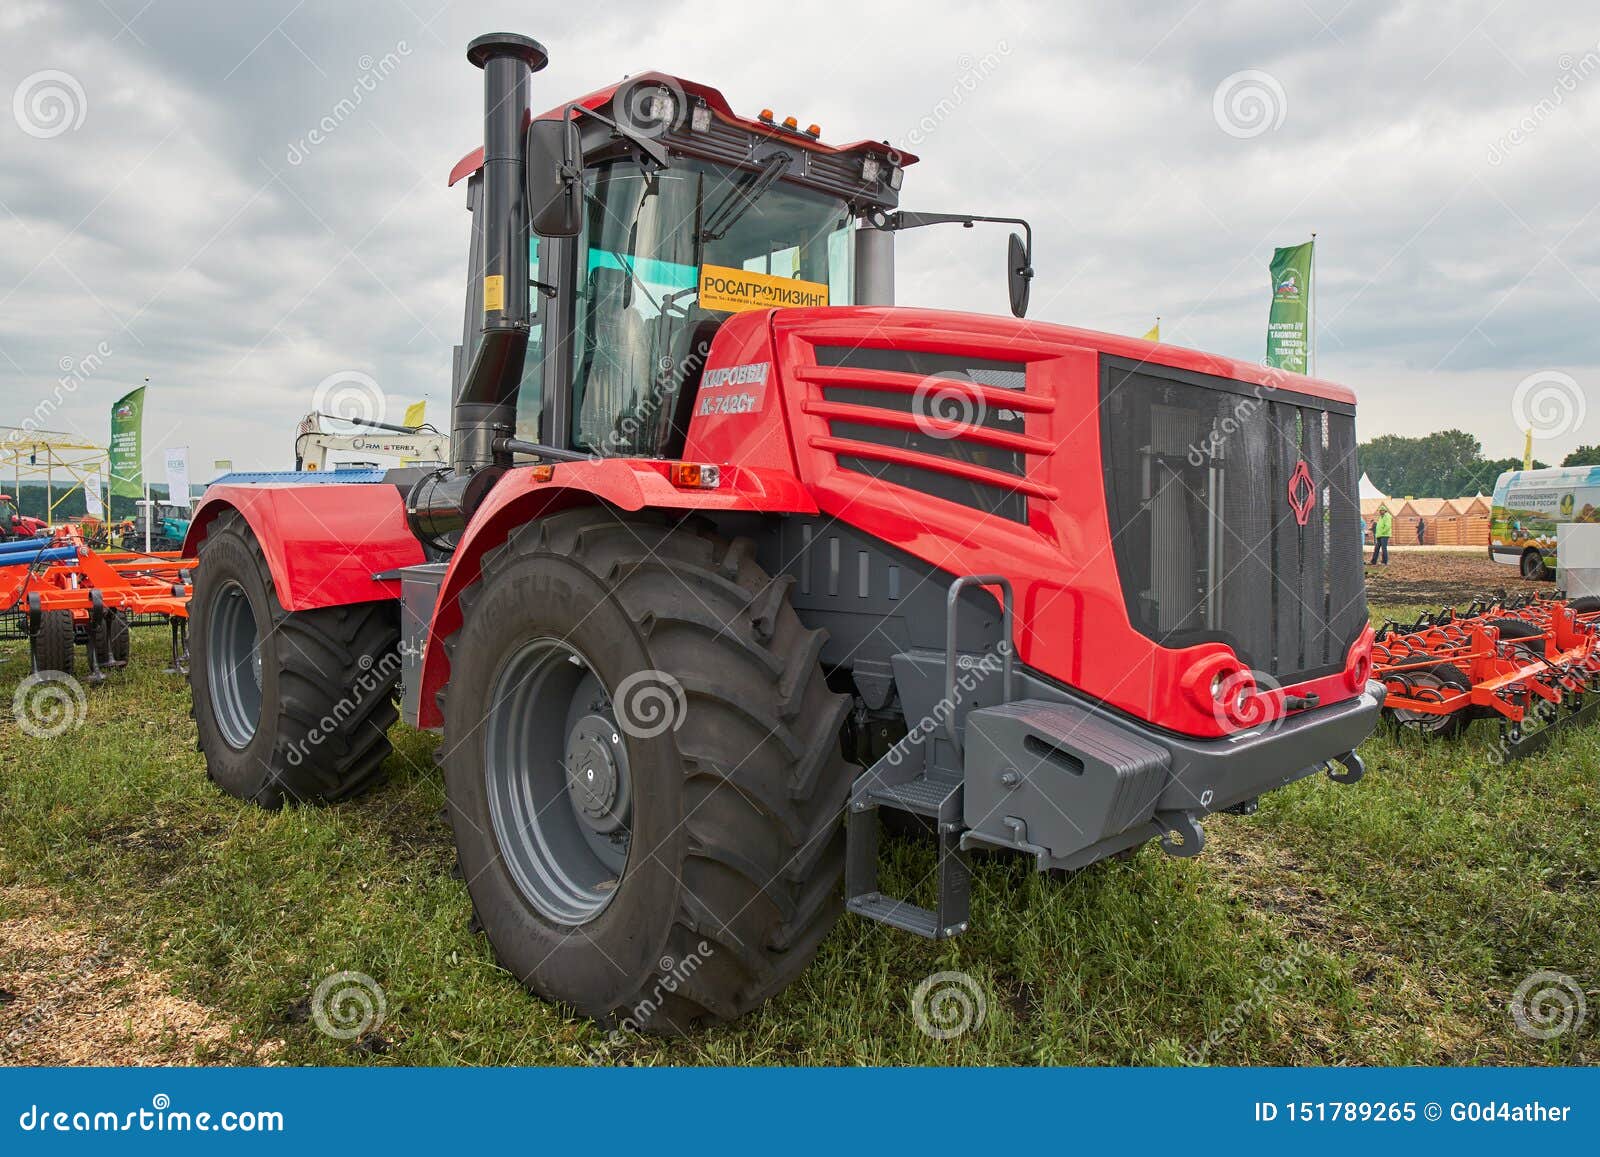 白俄罗斯轮式农用拖拉机 图库摄影片. 图片 包括有 行业, 陈列, 复杂, 困难, 引擎, 现代, 户外 - 163083622